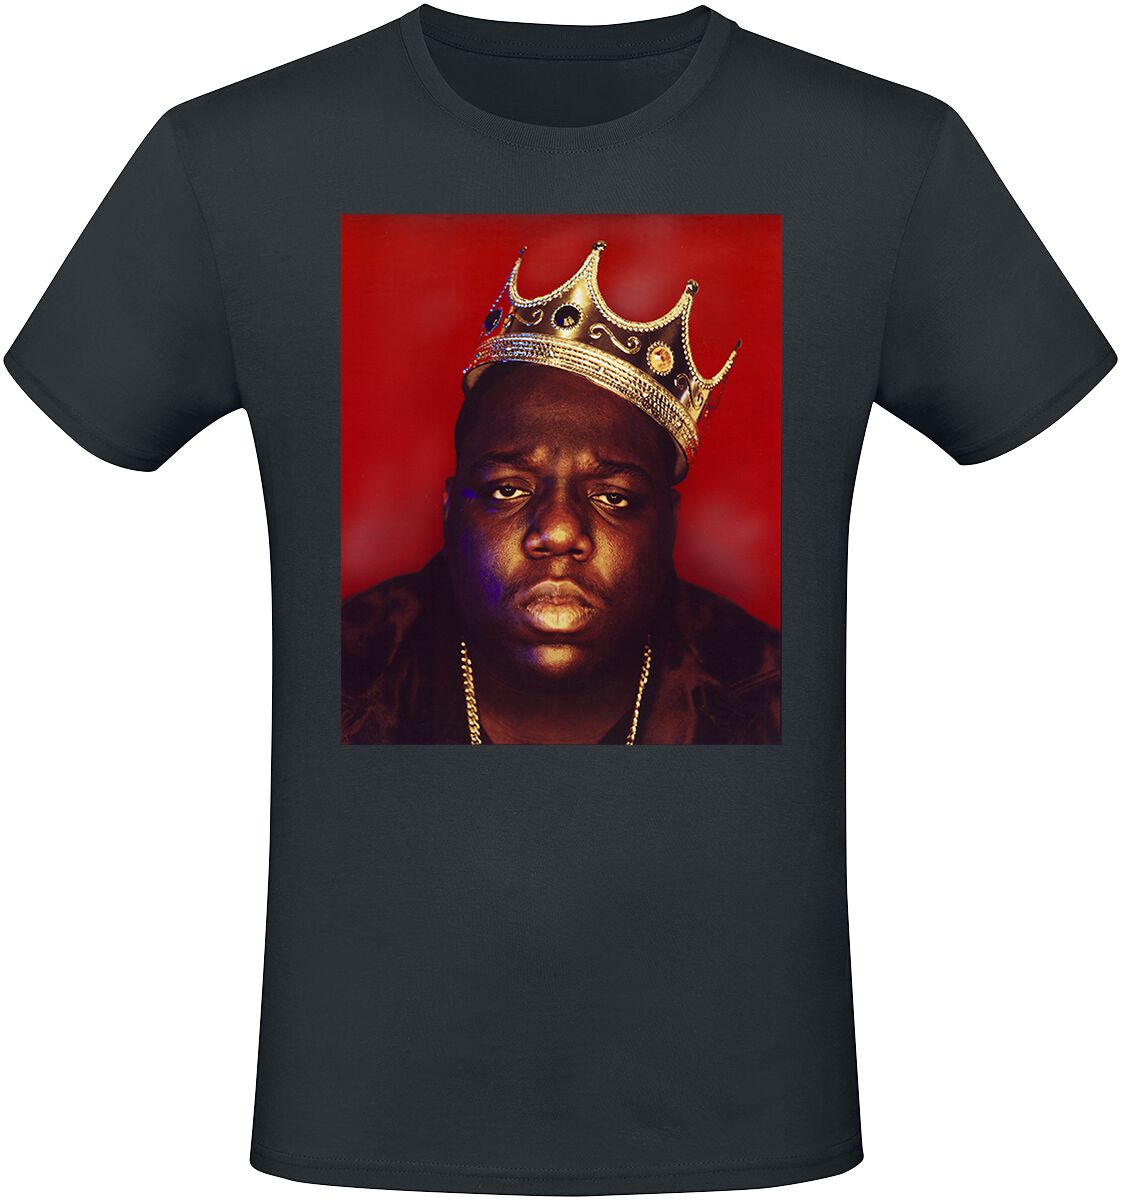 Notorious B.I.G. T-Shirt - Big Crown - S bis XXL - für Männer - Größe XL - schwarz  - Lizenziertes Merchandise!